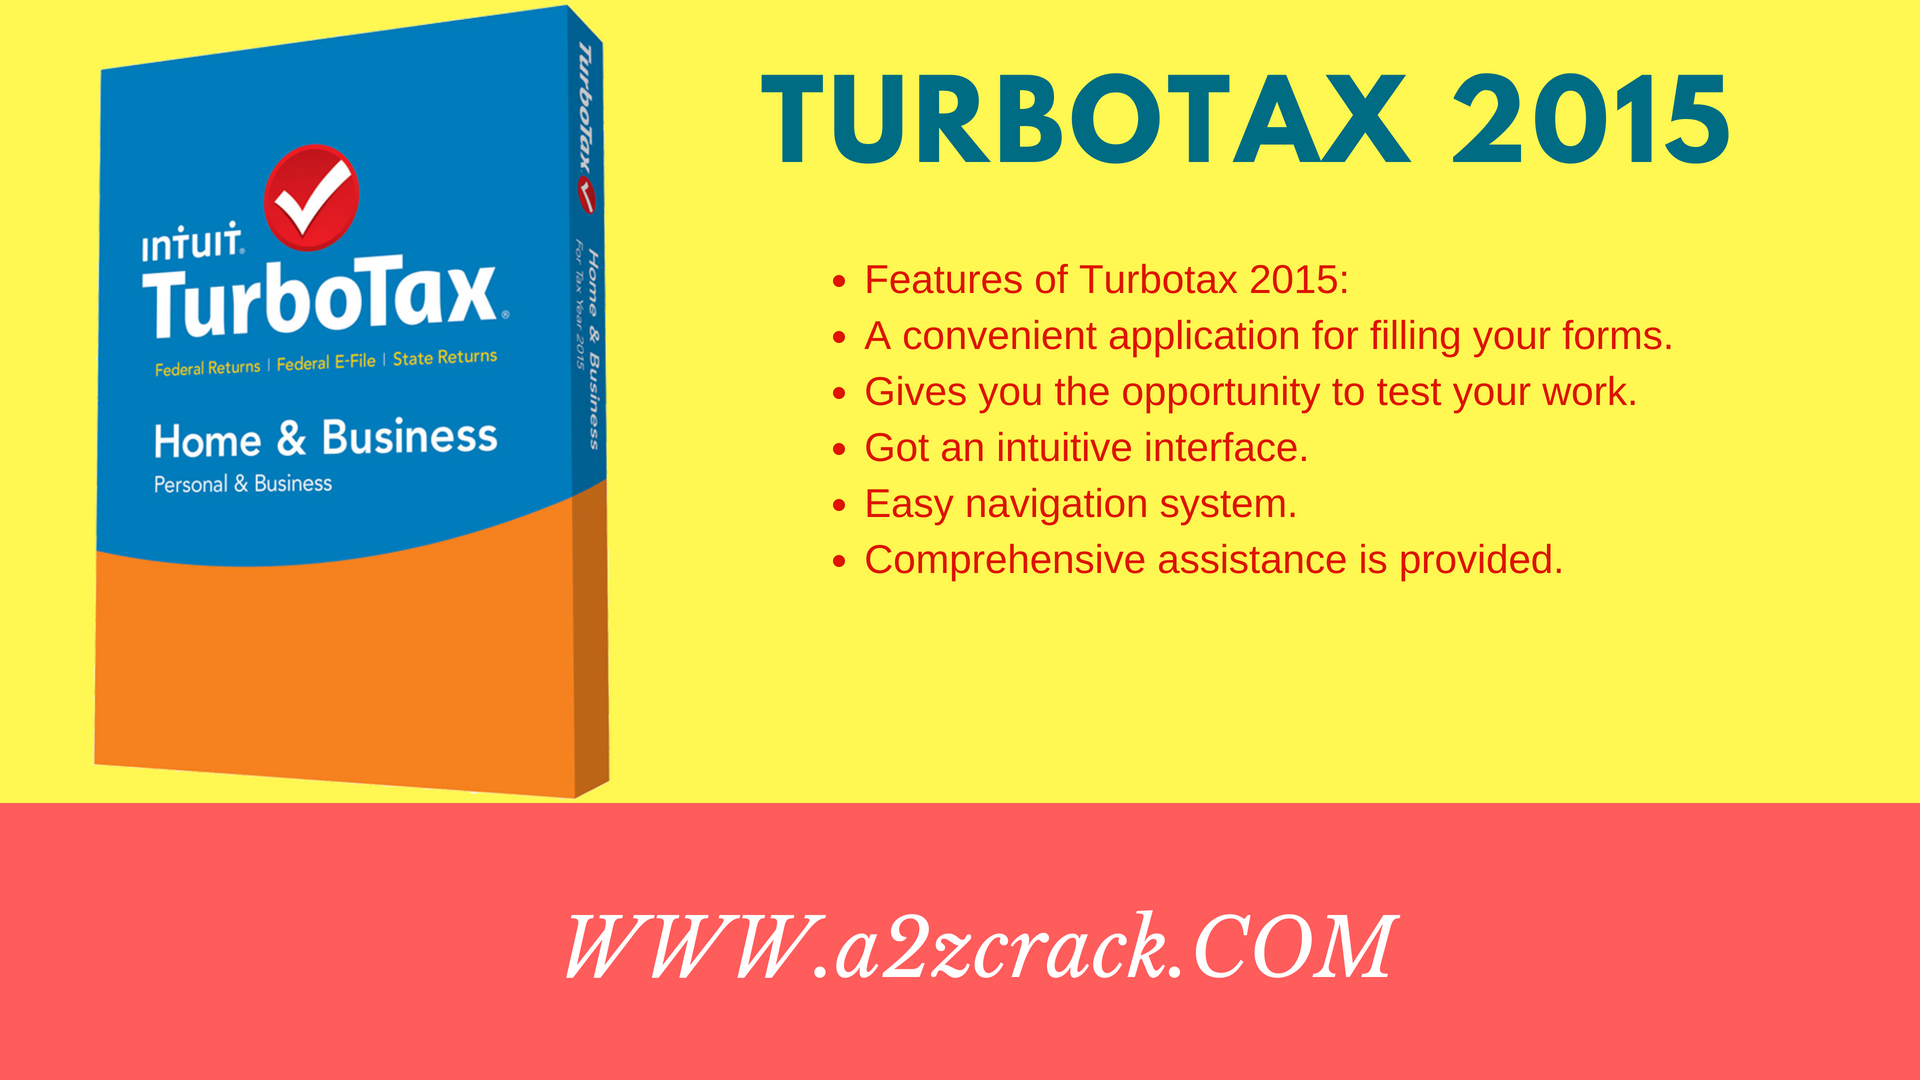 turbotax loan 2018